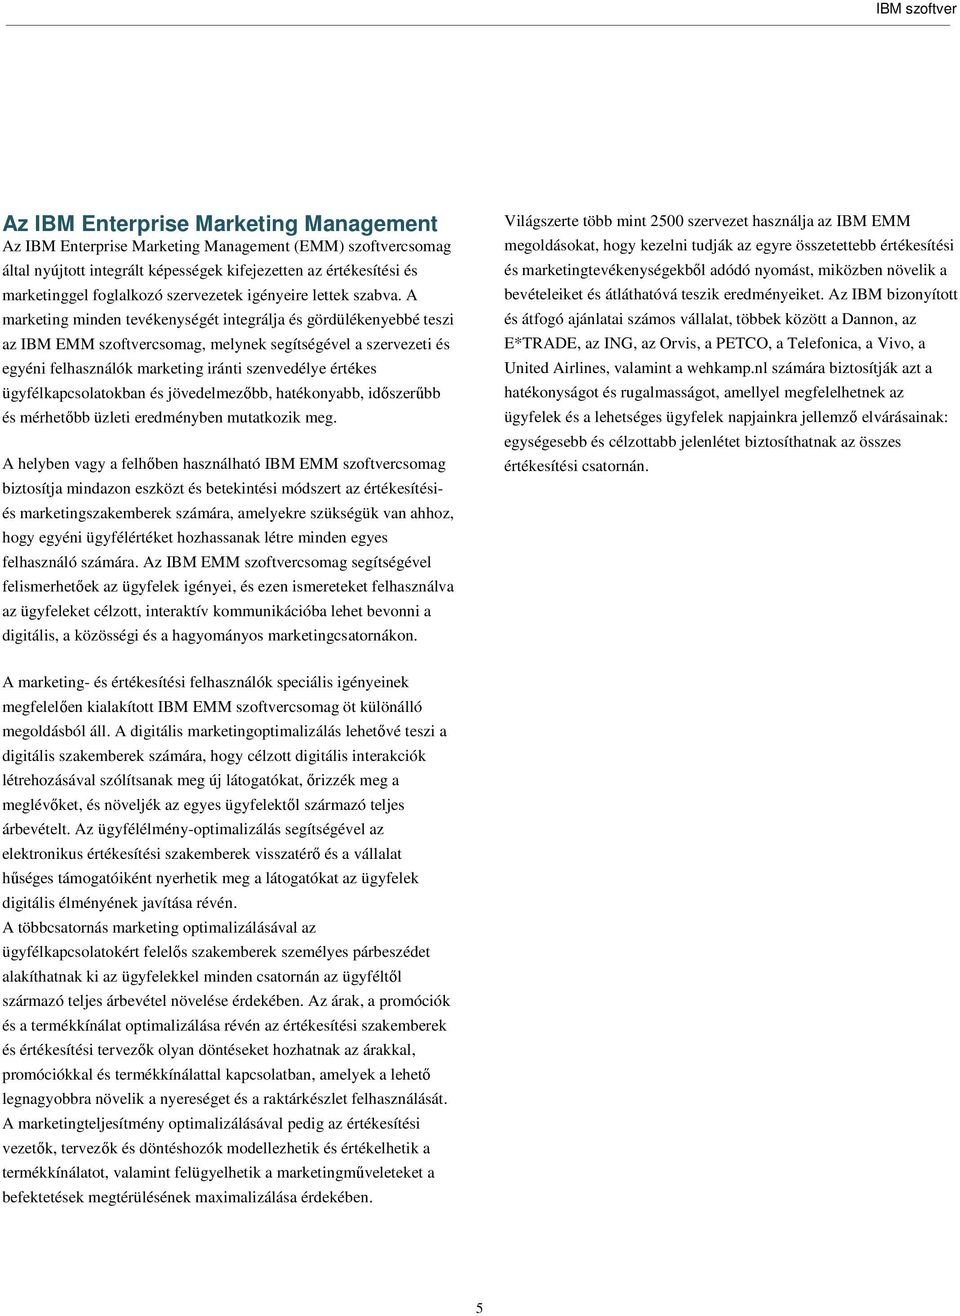 A marketing minden tevékenységét integrálja és gördülékenyebbé teszi az IBM EMM szoftvercsomag, melynek segítségével a szervezeti és egyéni felhasználók marketing iránti szenvedélye értékes